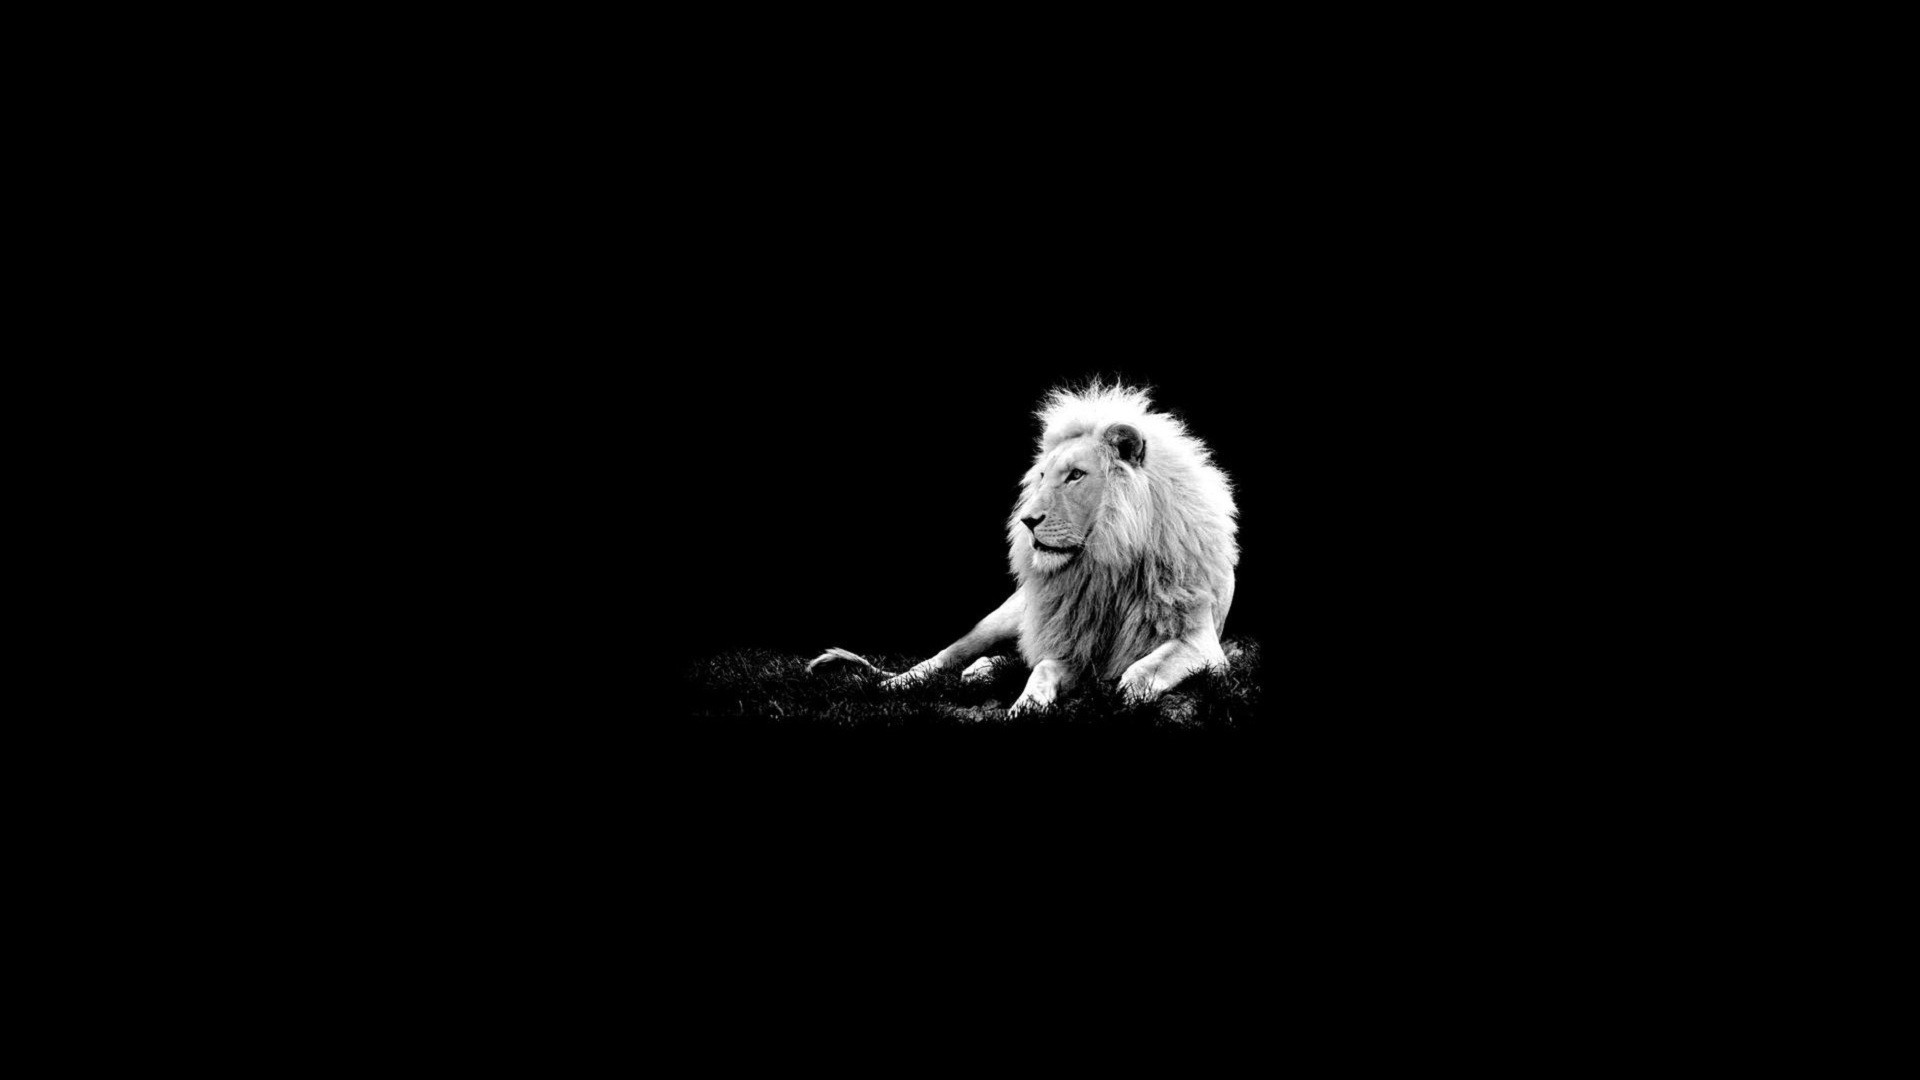 Wallpaper Lion For Desktop Lions